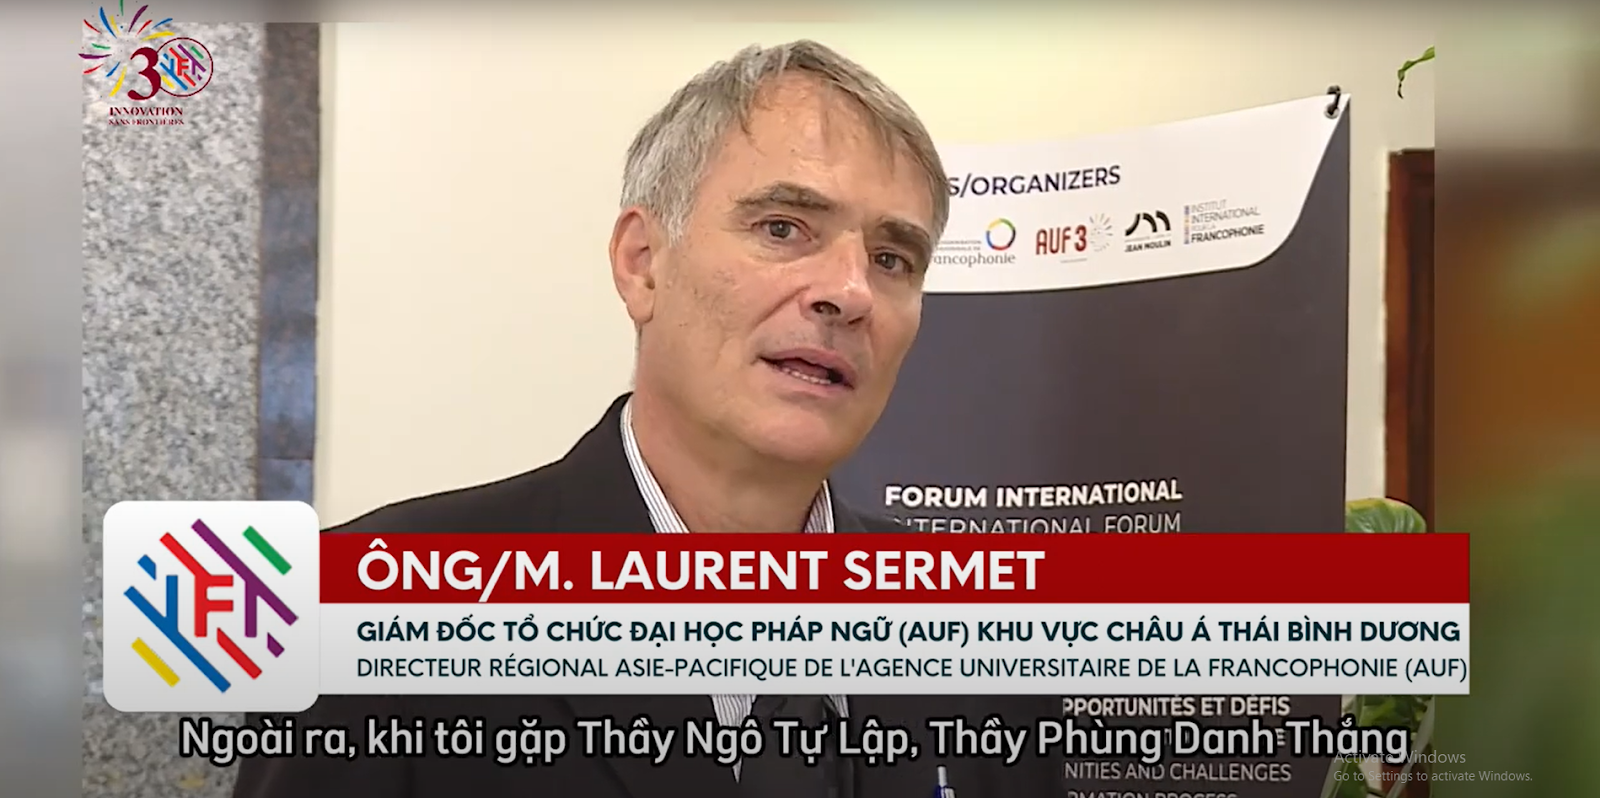 Laurent Sermet, Director of AUF in the Asia-Pacific region